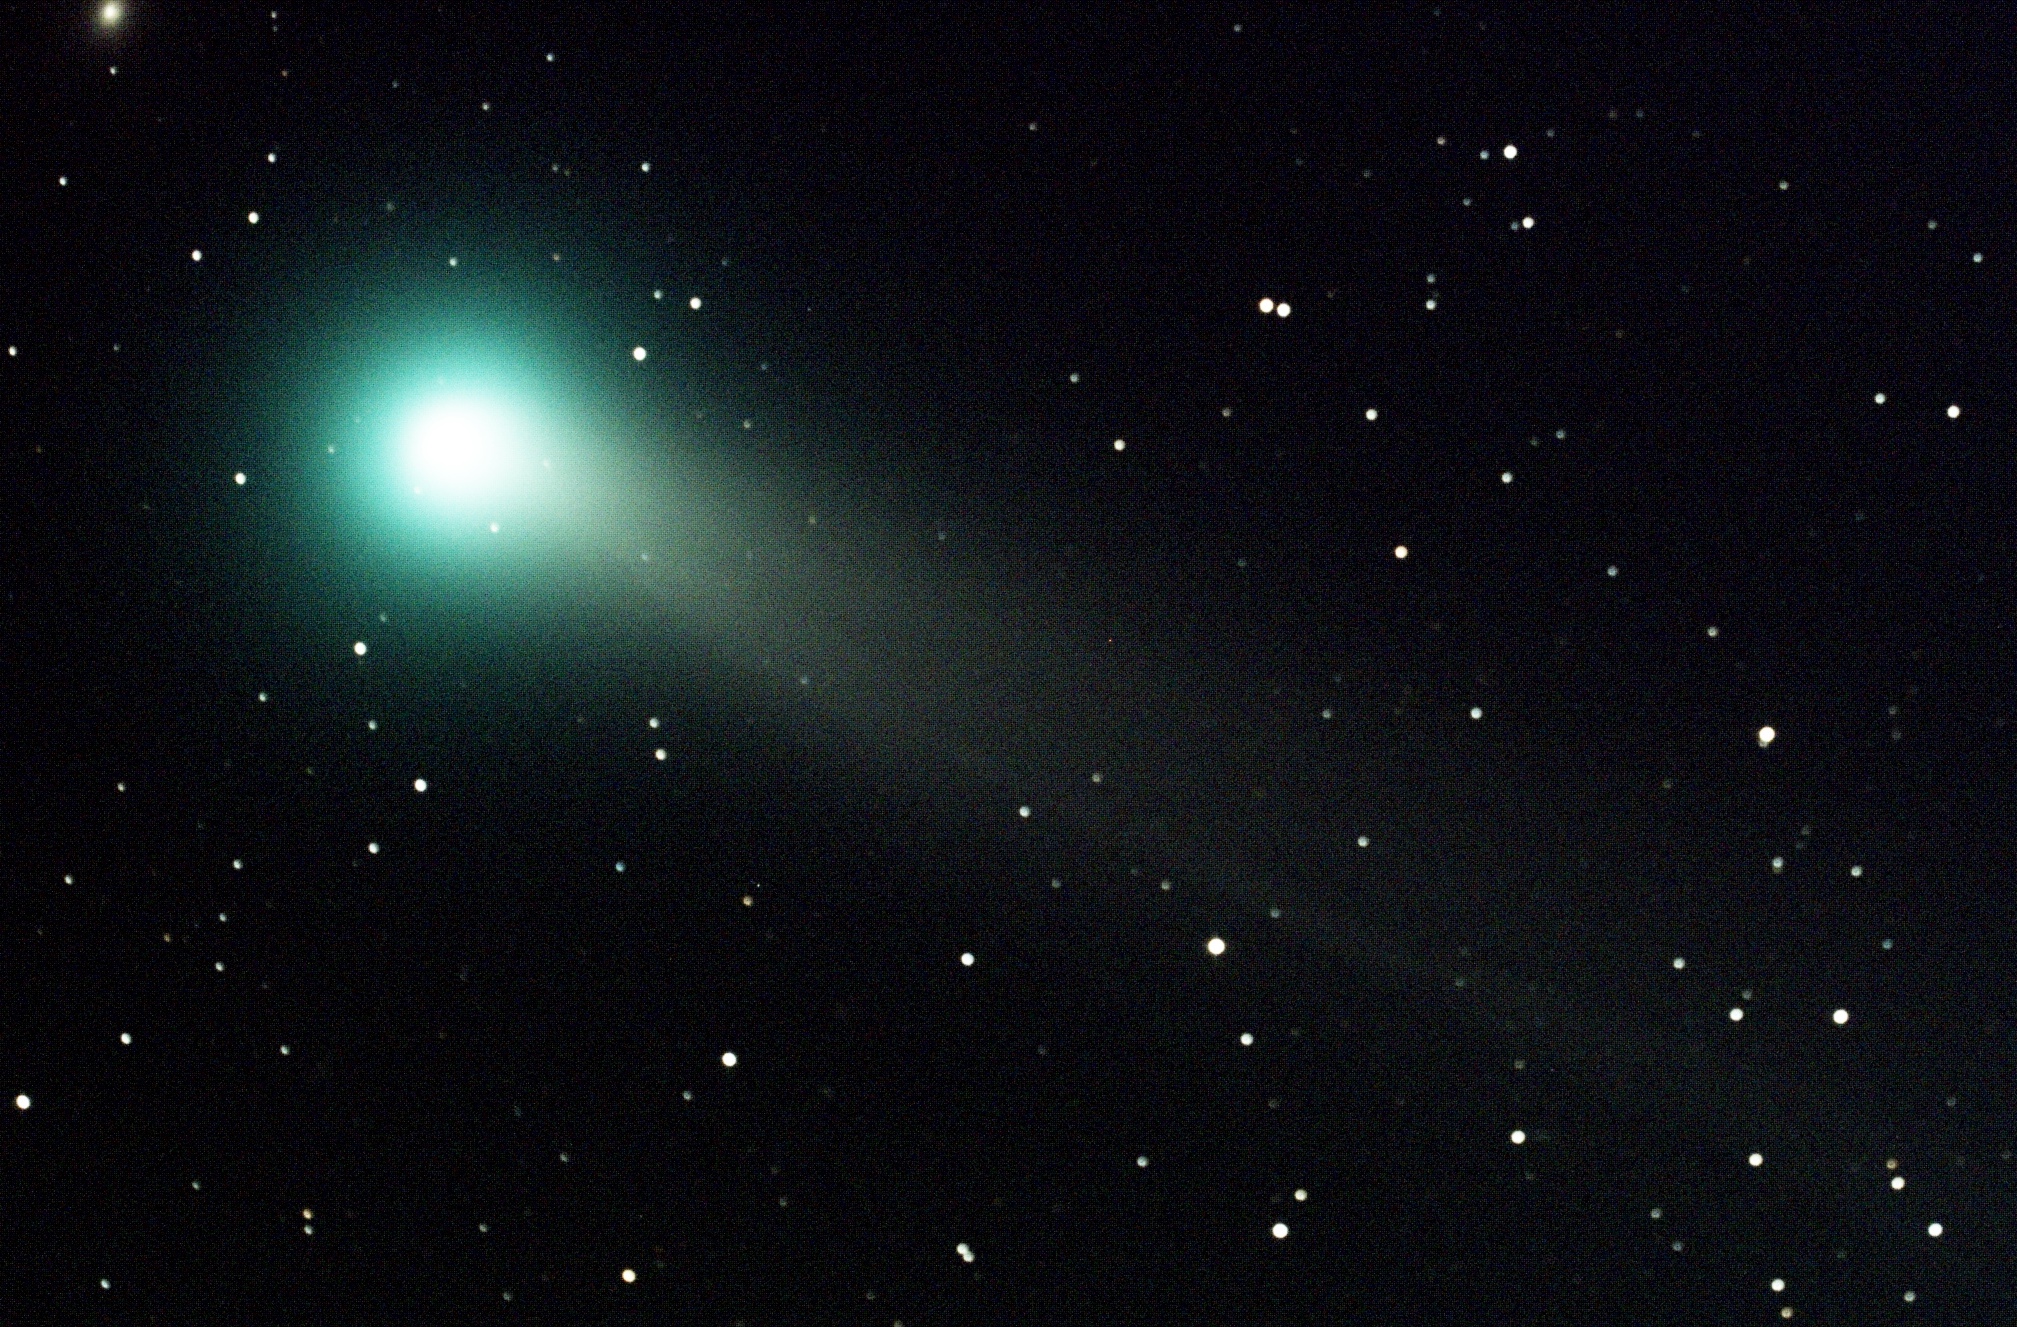 Comet Lovejoy in Ursa Major in the night sky with stars